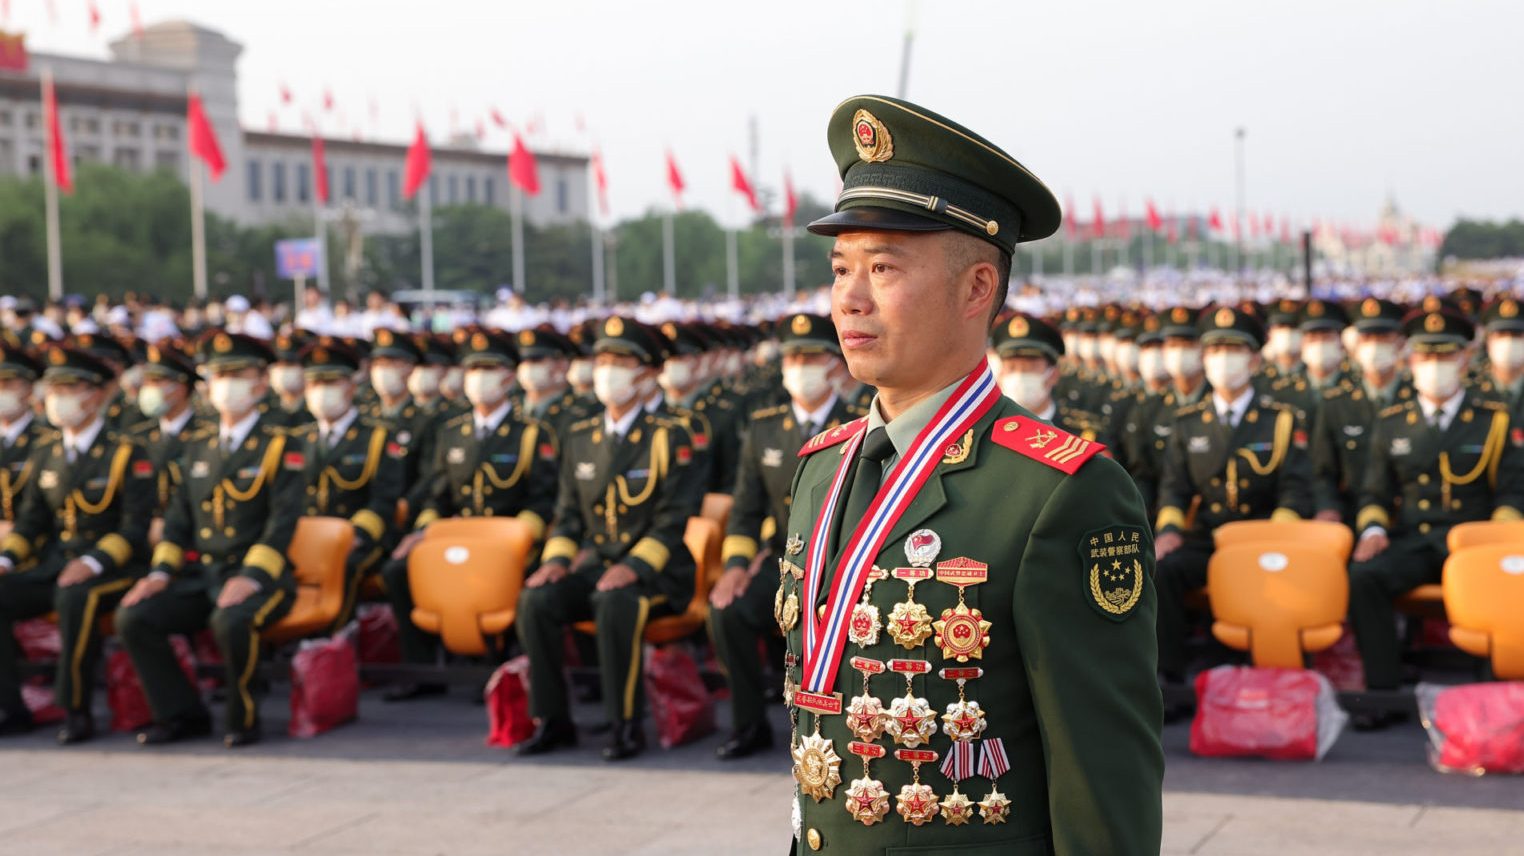 Quân đội Trung Quốc trong lễ kỷ niệm 100 năm thành lập đảng Cộng Sản Trung Quốc hôm 1/7/2021 tại Bắc Kinh, Trung Quốc.Ảnh: Lintao Zhang/ Getty Images